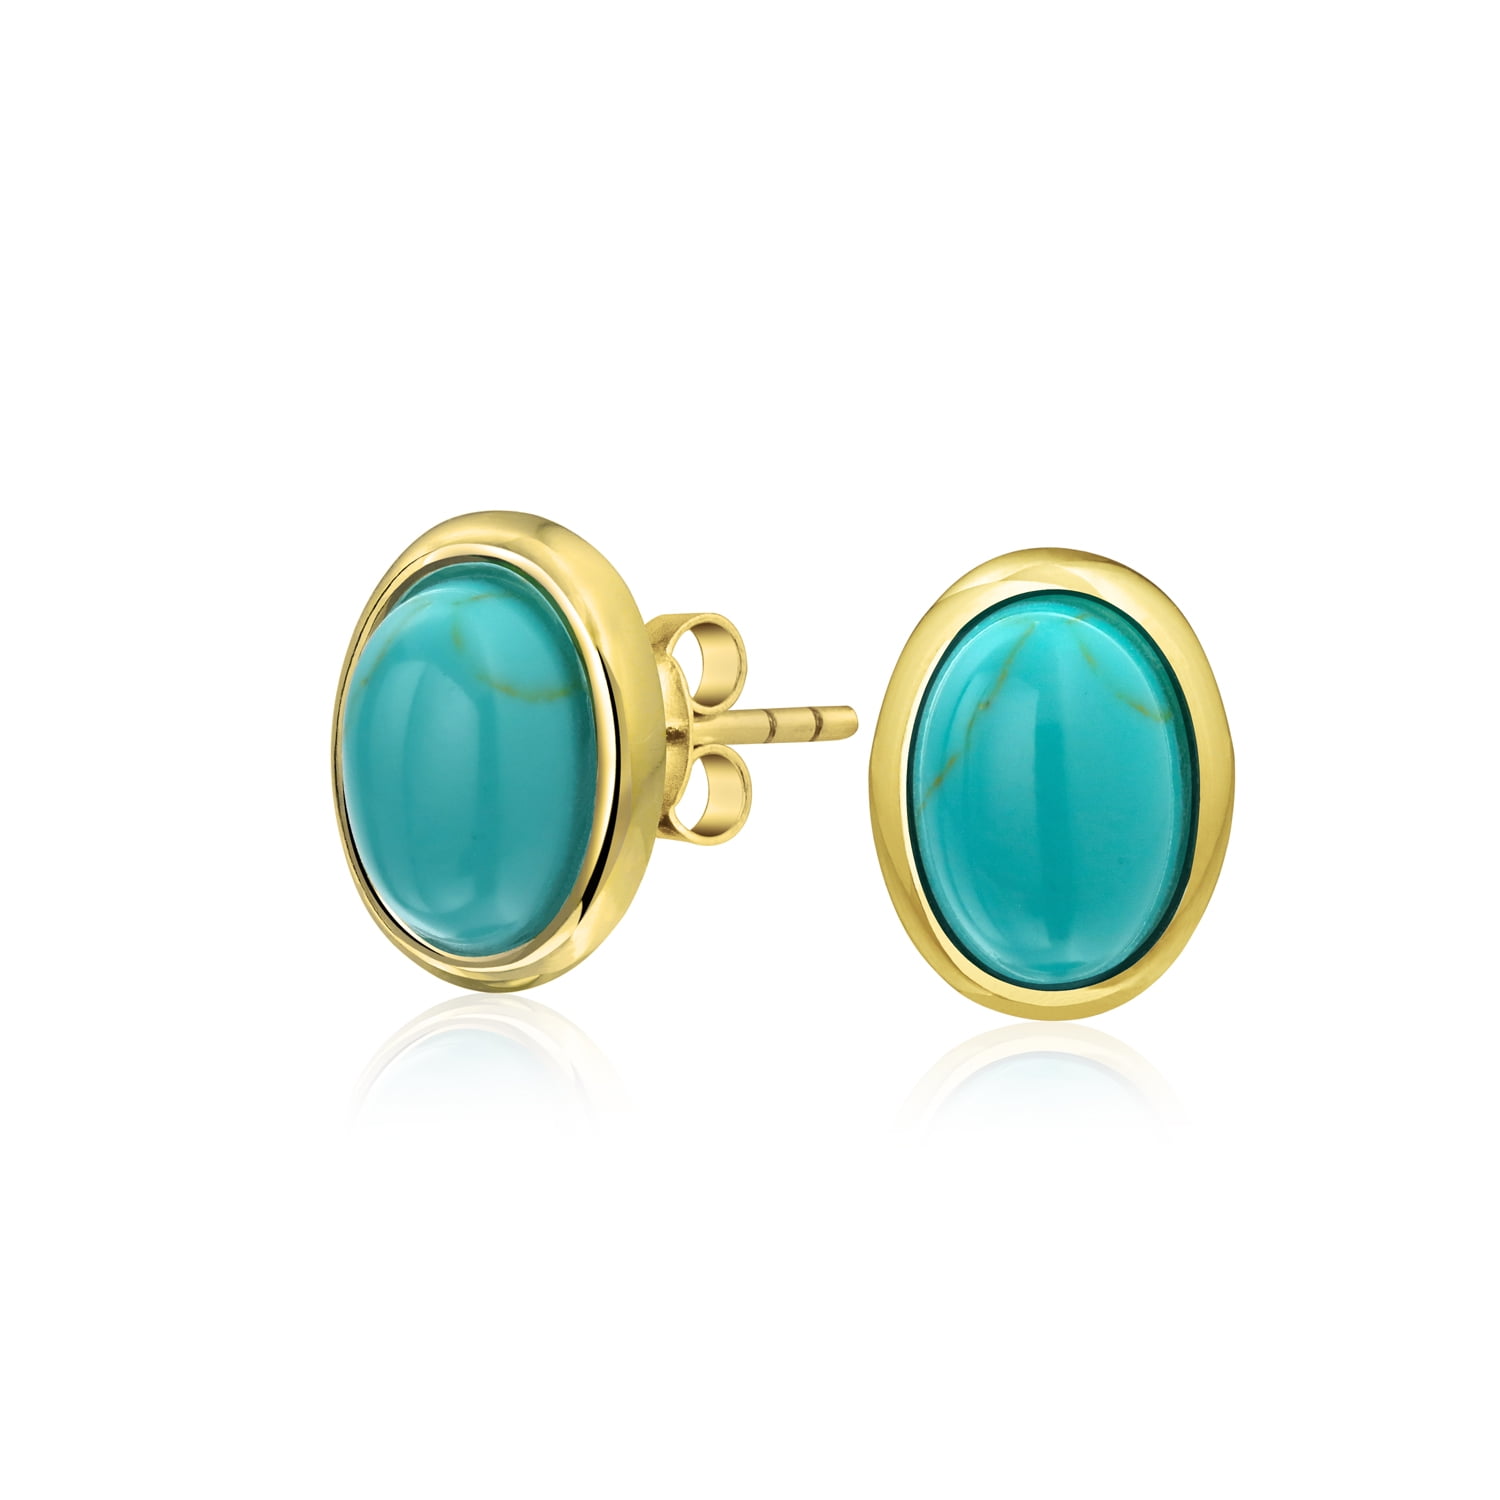 Blue Green Turquoise Earrings for Women 9ct Gold Earrings Dangle Drop Hooks 